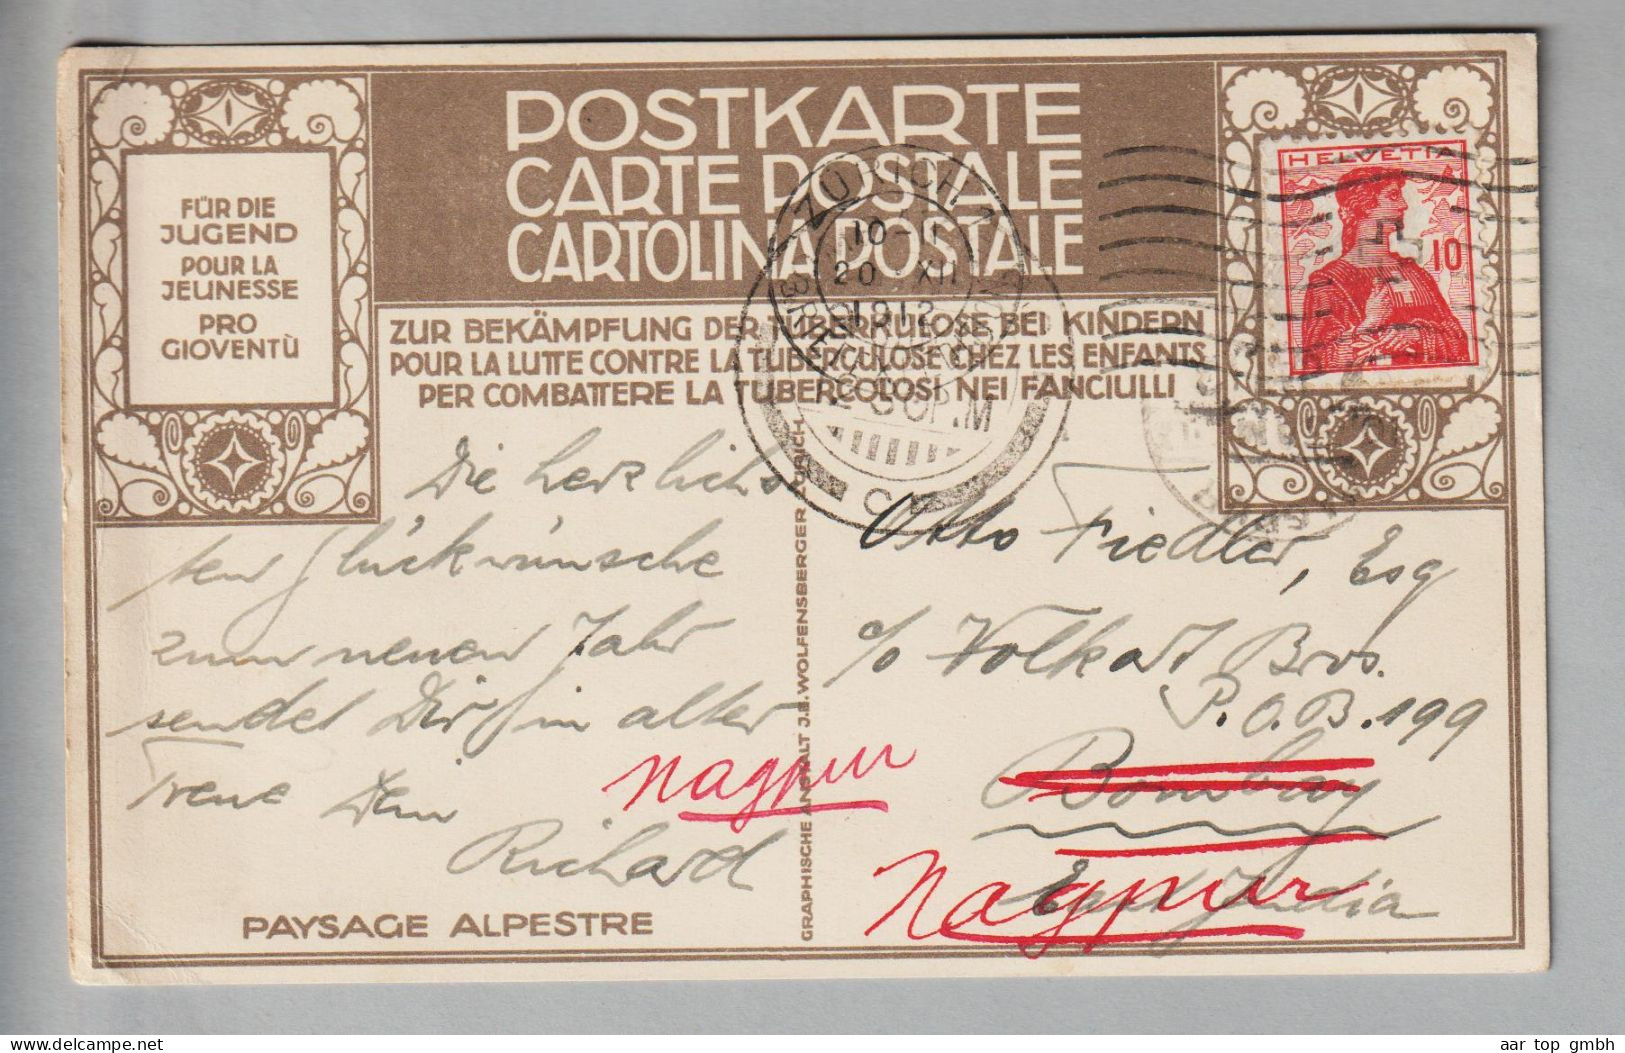 CH Helvetiabrust 1912-12-30 Zürich PJ Postkarte Nach Bombay Weitergeleitet Nach Nagpur - Covers & Documents